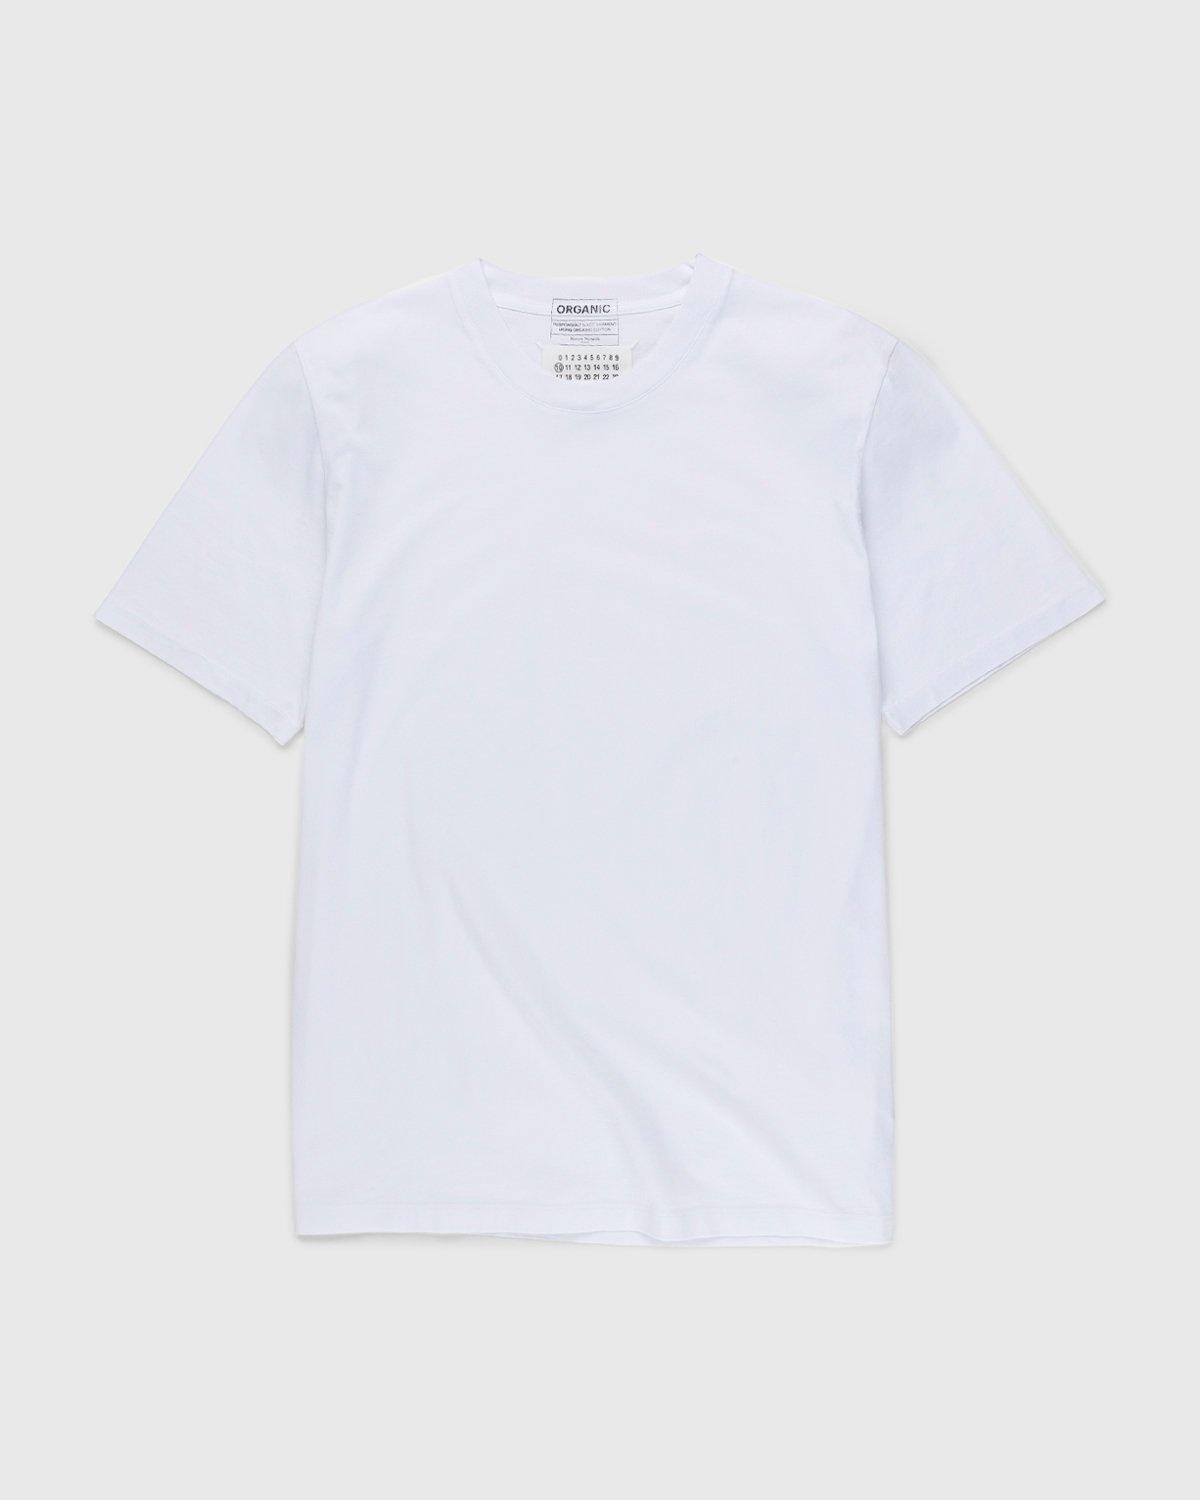 Maison Margiela – Shades of White T-Shirts 3 Pack Multi - Tops - White - Image 2